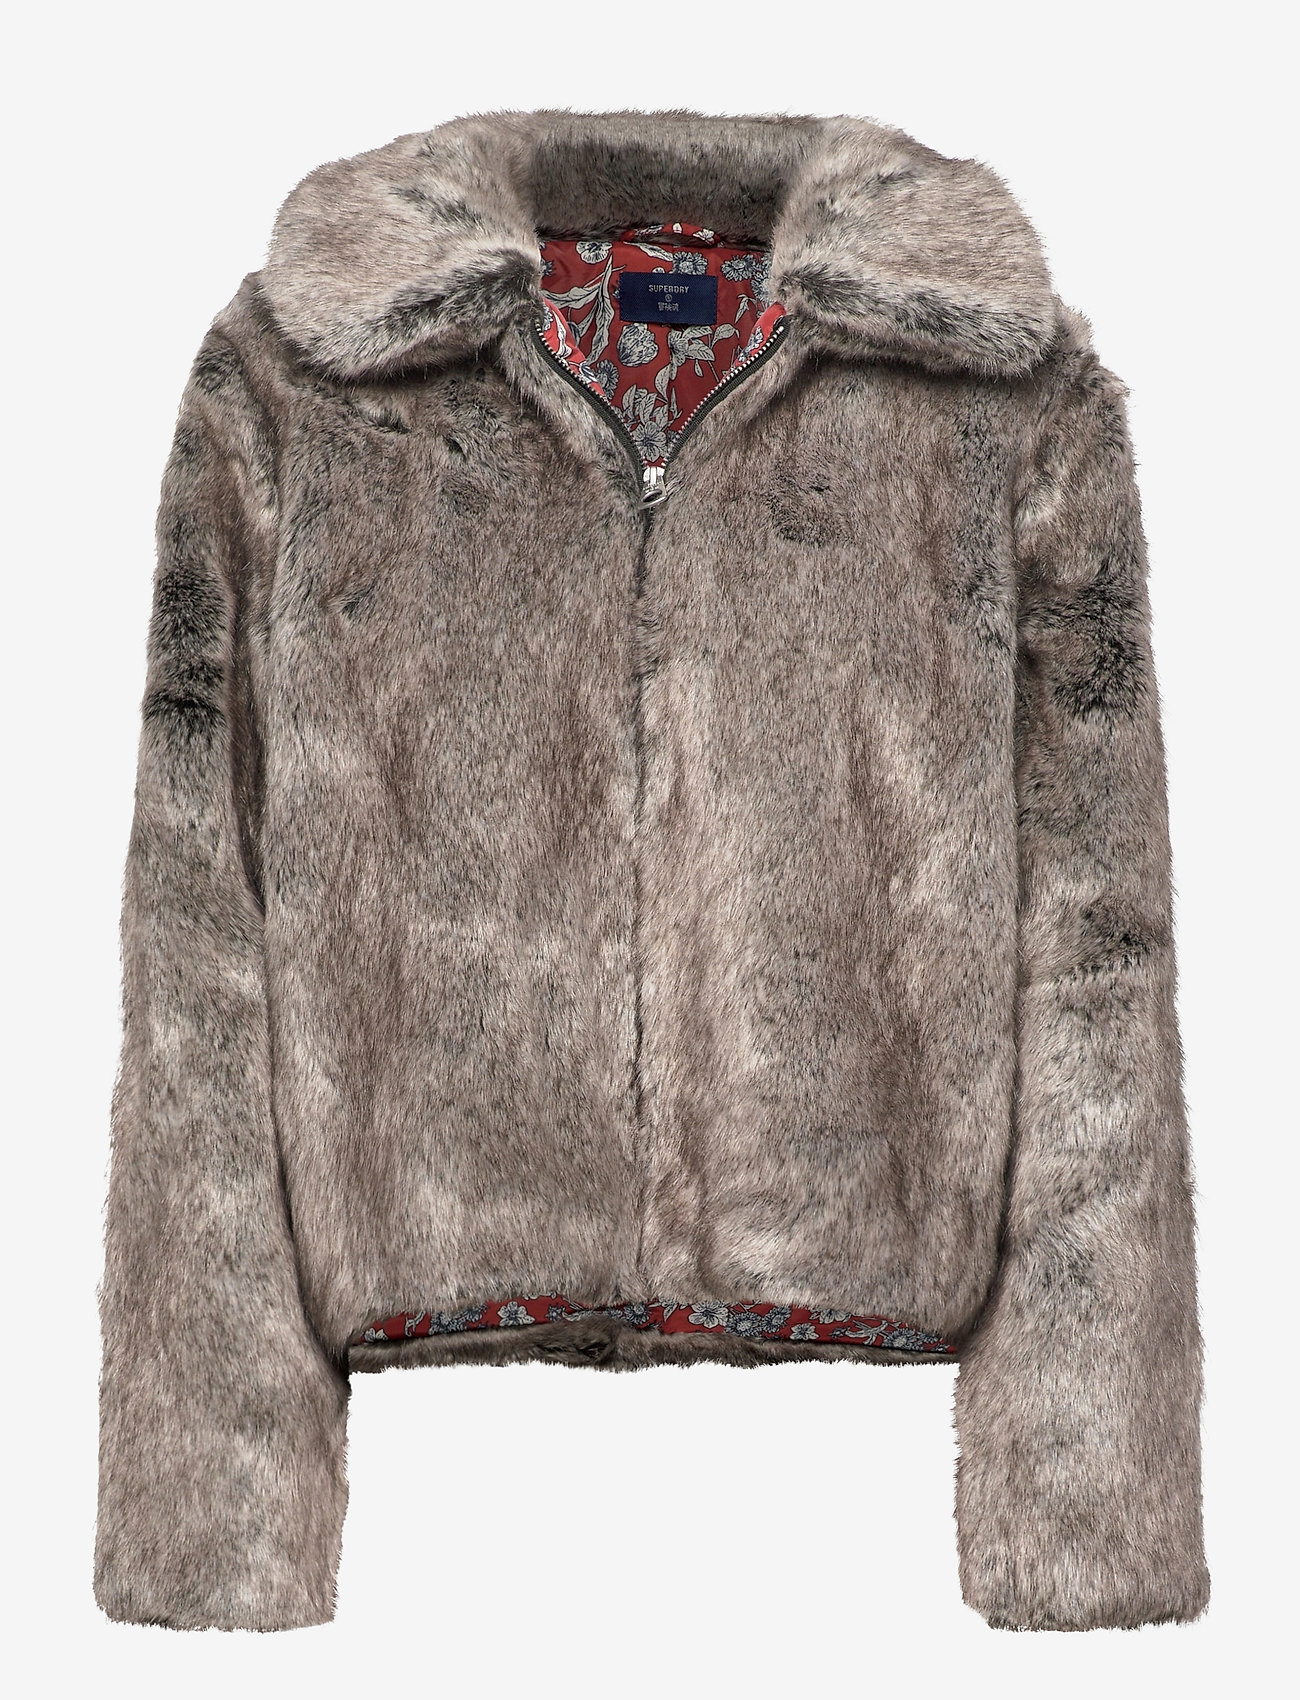 Superdry Boho Faux Fur Jacket (Mink), 671.44 Stort af designer mærker | Booztlet.com